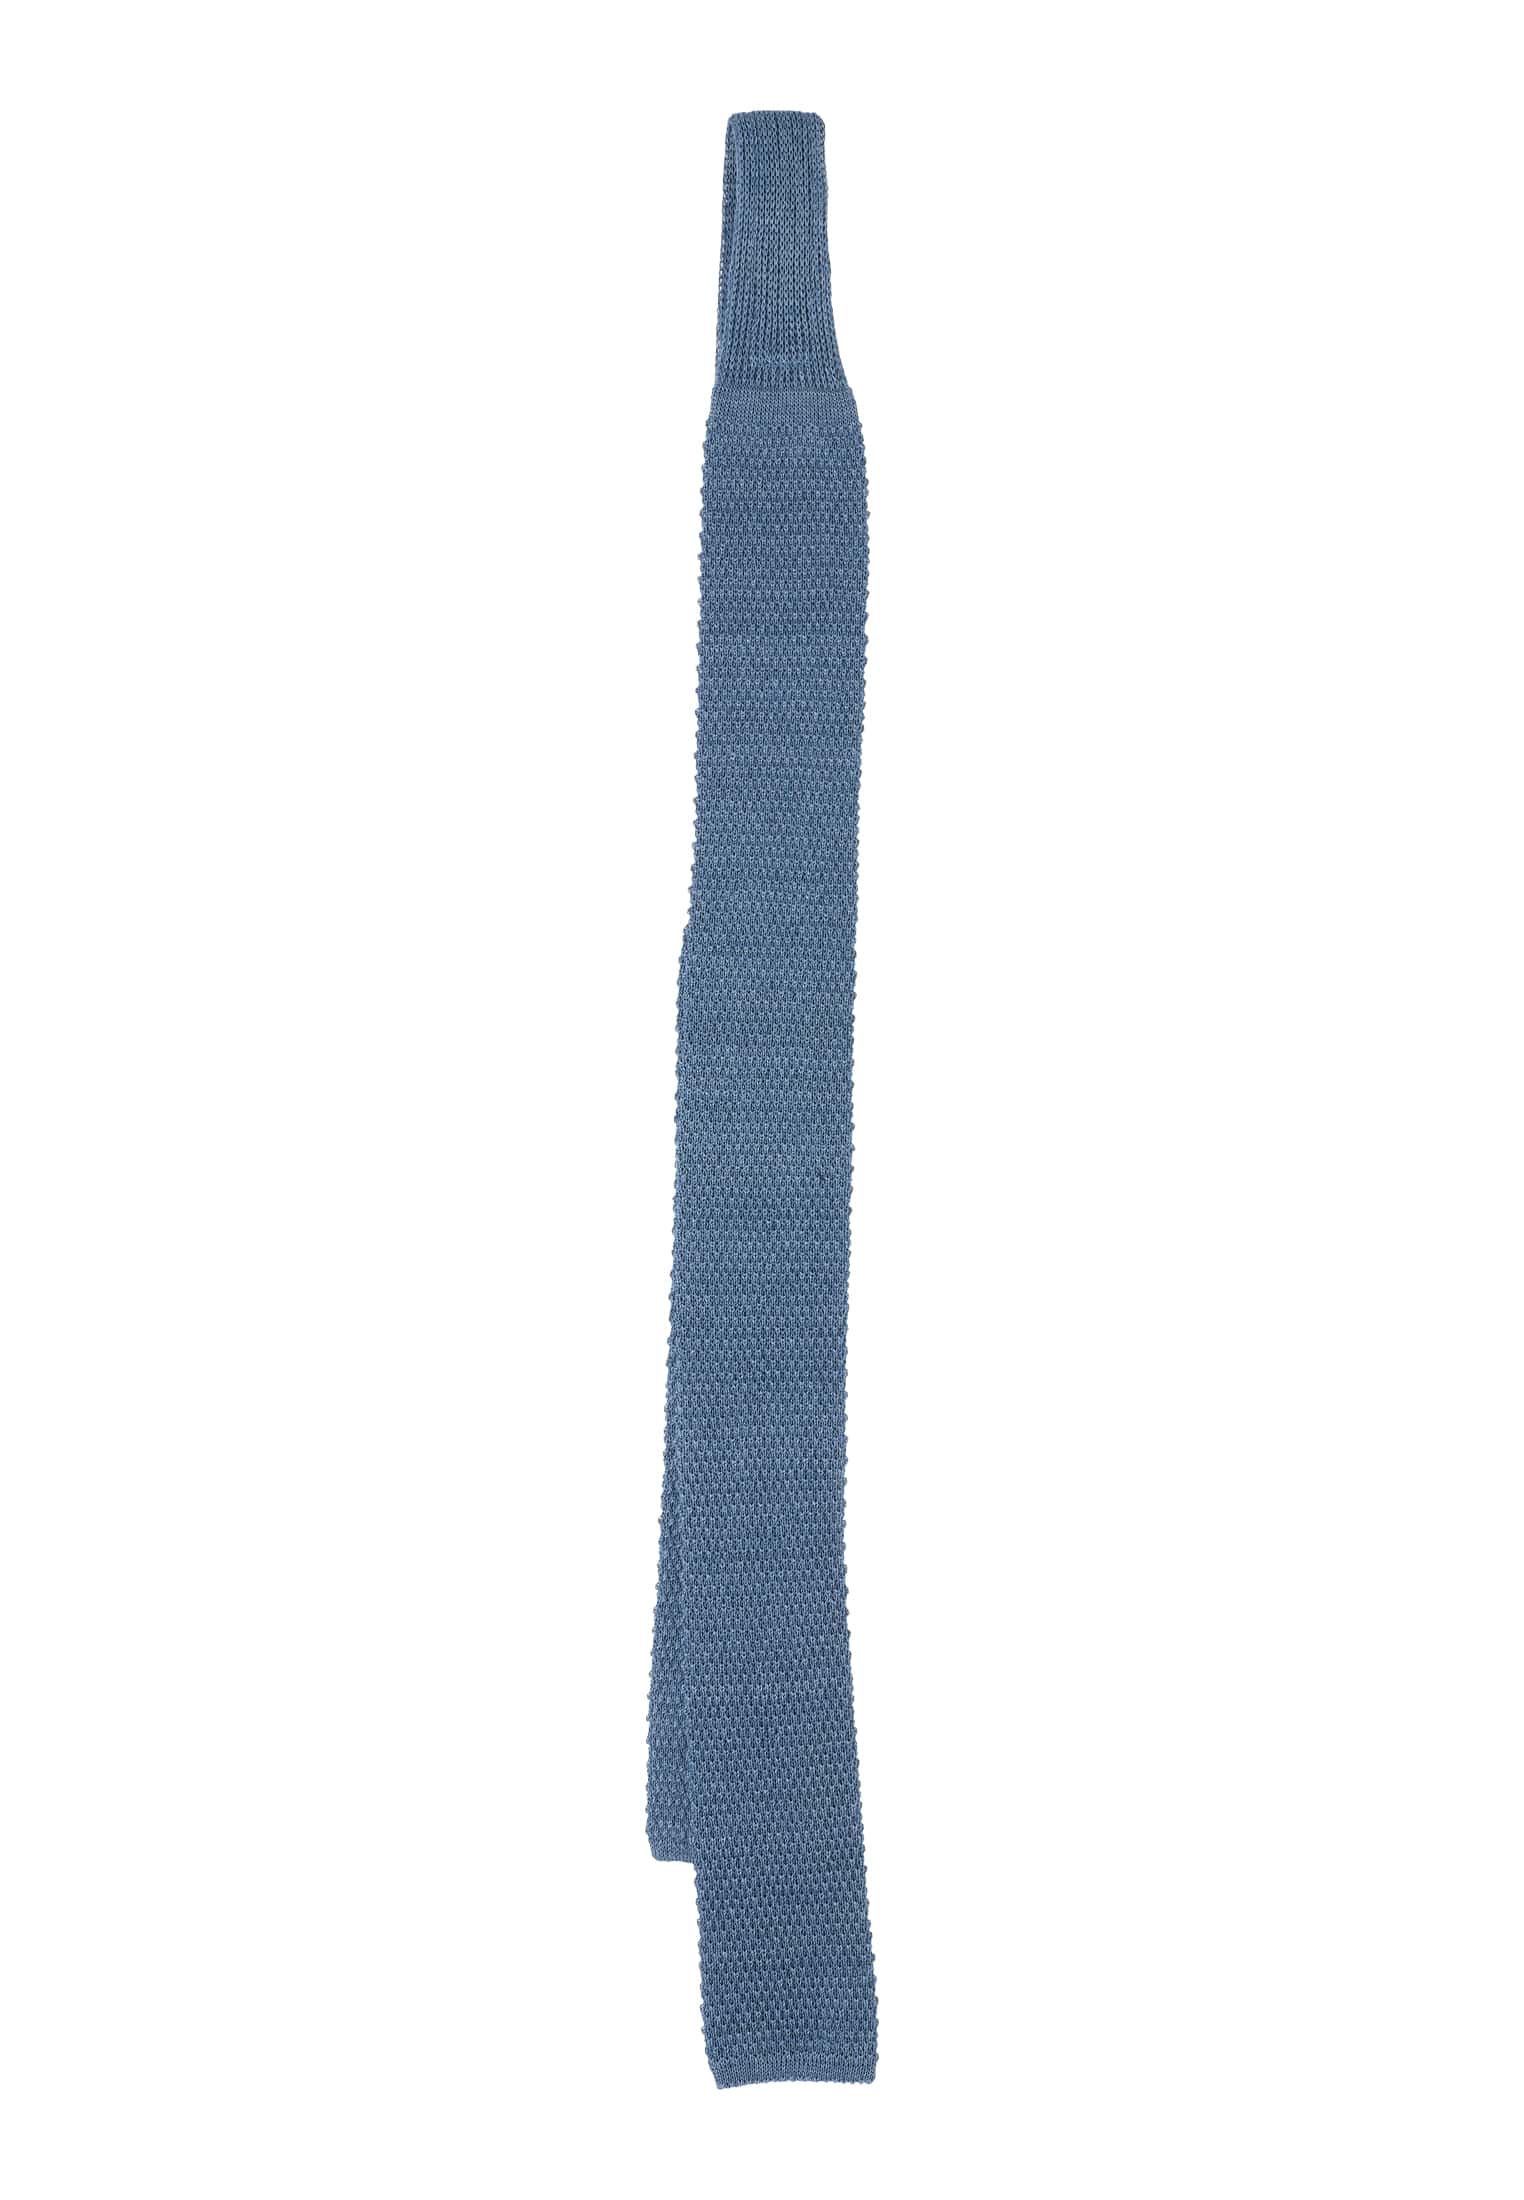 Krawatte in rauchblau unifarben | 1AC02004-01-62-142 | 142 | rauchblau